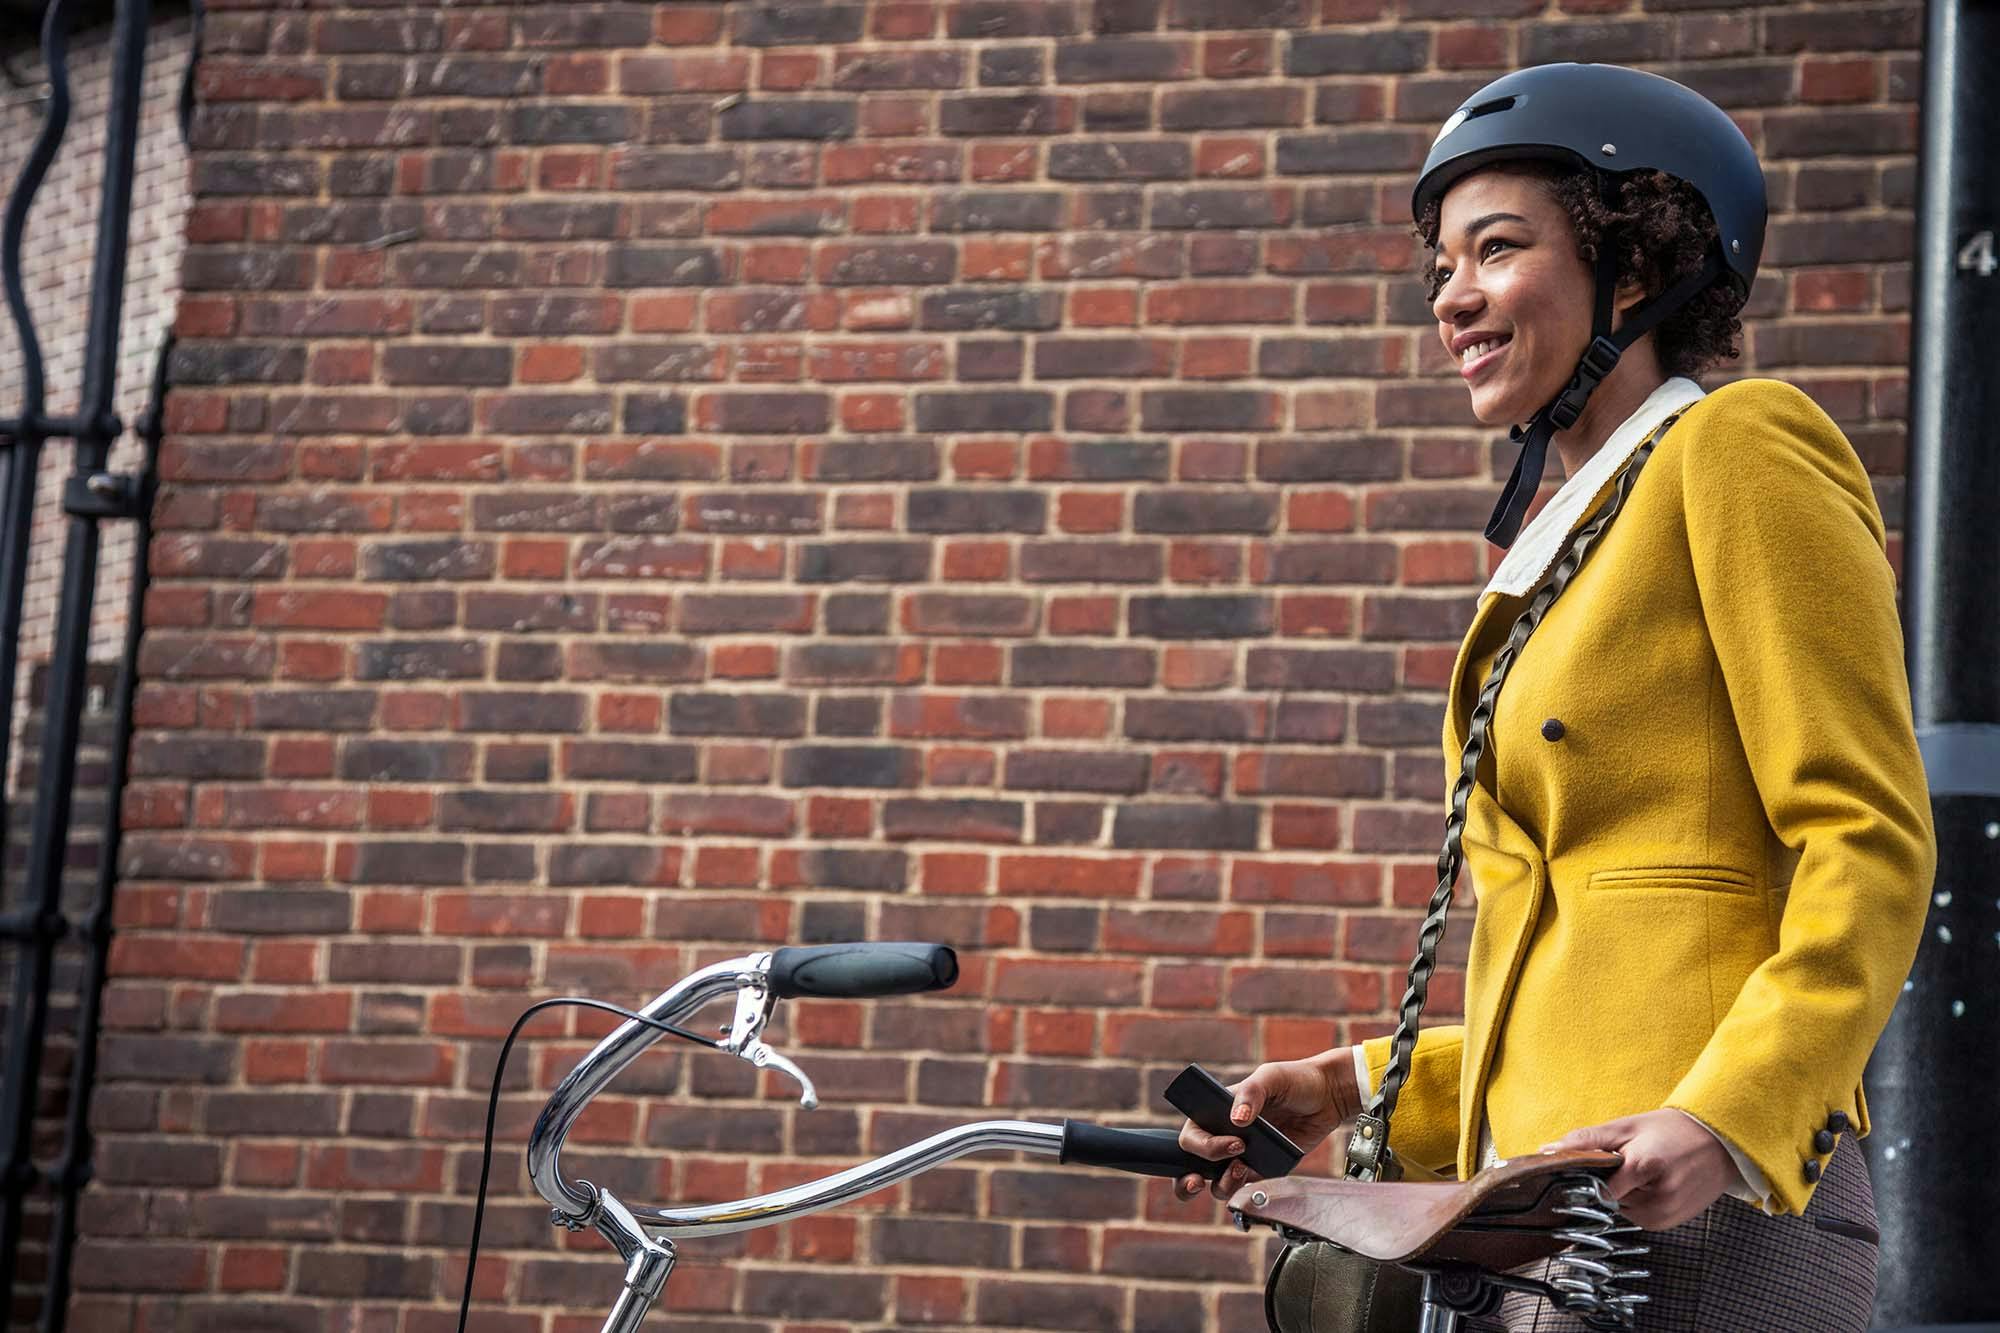 Frau nutzt Mobilitätsangebot ihres Arbeitgebers und fährt Rad